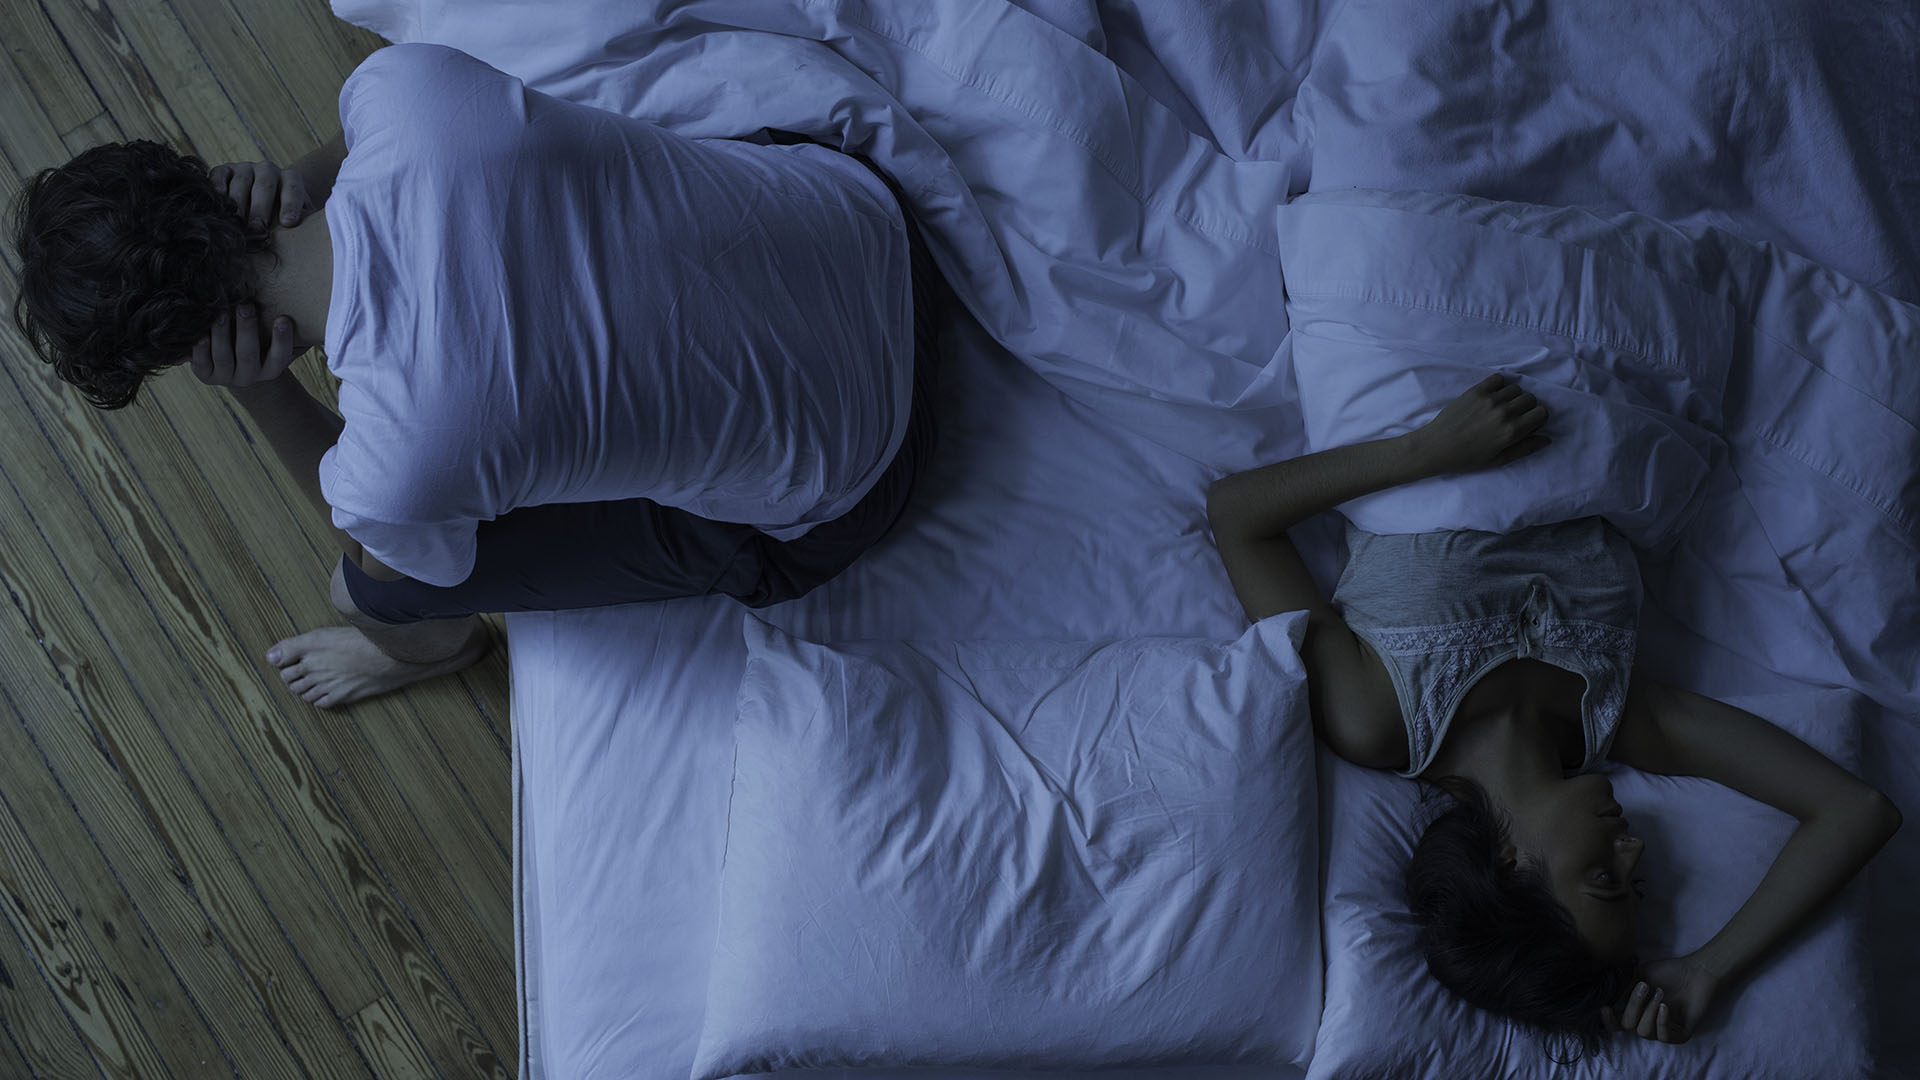 мужчина просыпается в постели, пока его партнер спит